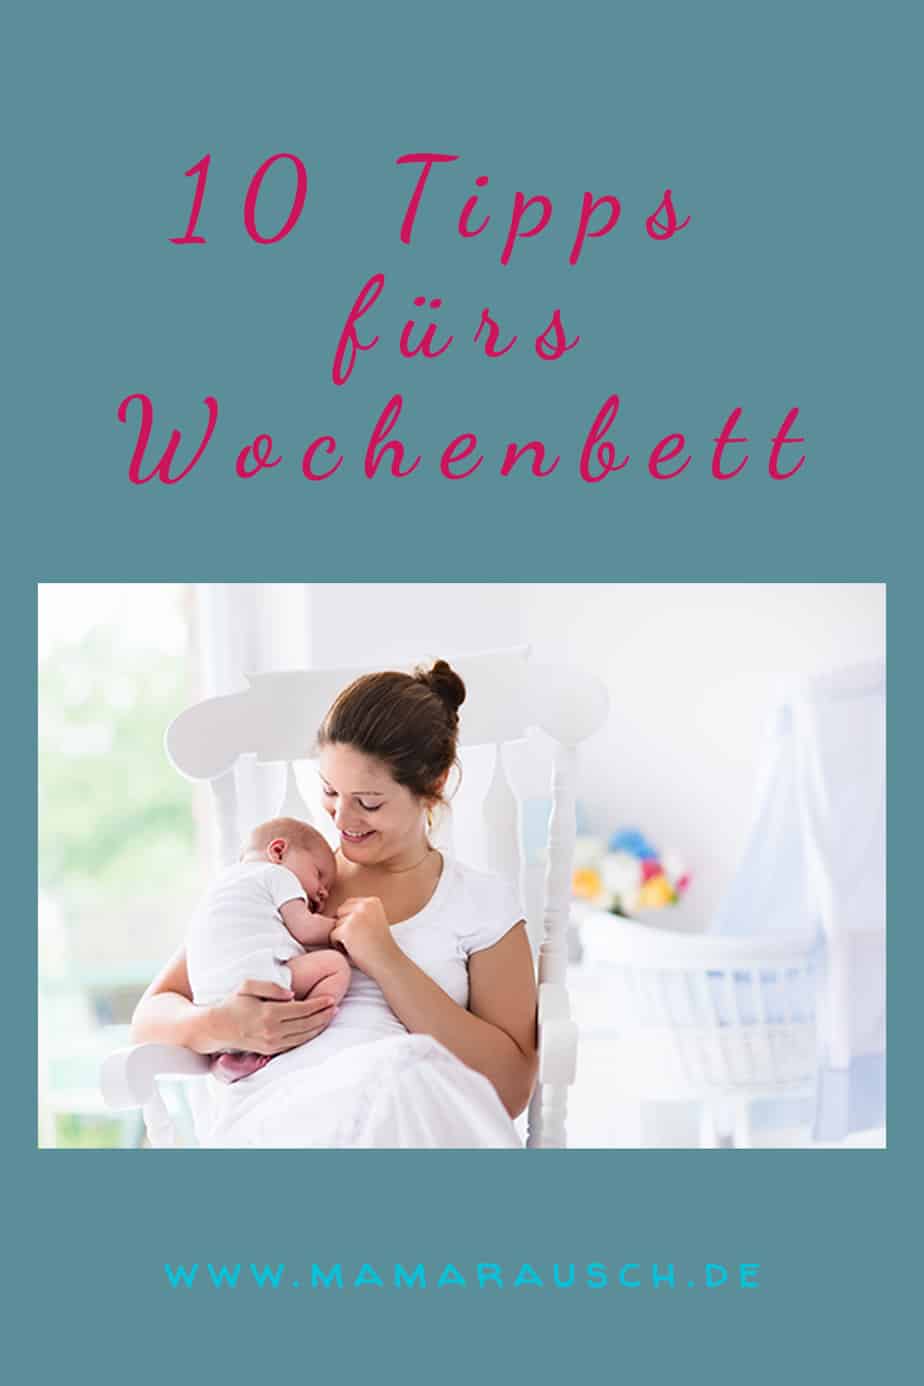 10 Tipps fürs Wochenbett - die erste Zeit mit Baby Was braucht man im Wochenbett? Diese Frage stellen sich viele werdende Mamis. Meine 10 Tipps fürs Wochenbett helfen dir bei der Vorbereitung aufs Wochenbett